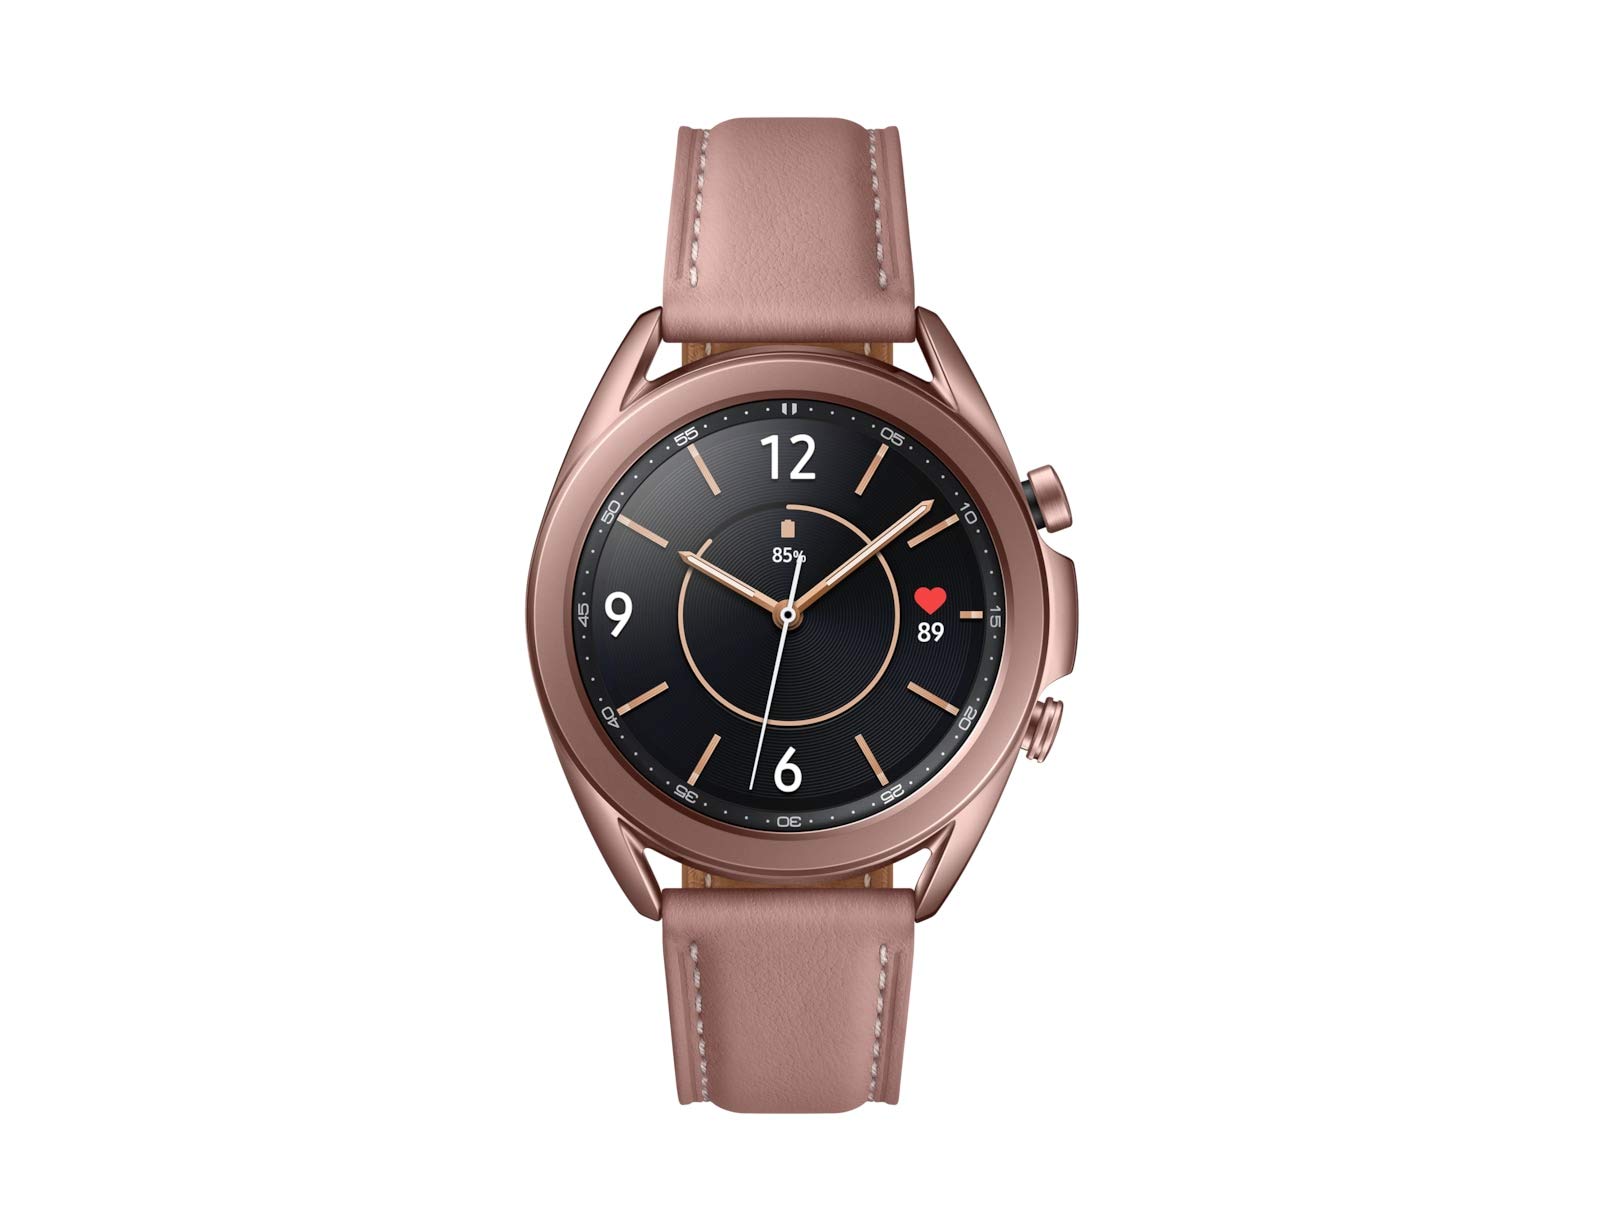 Samsung Galaxy Watch 3 (Bluetooth) 41mm - Smartwatch Mystic Bronze, SM-R850NZDAEUB [Italienische Version]